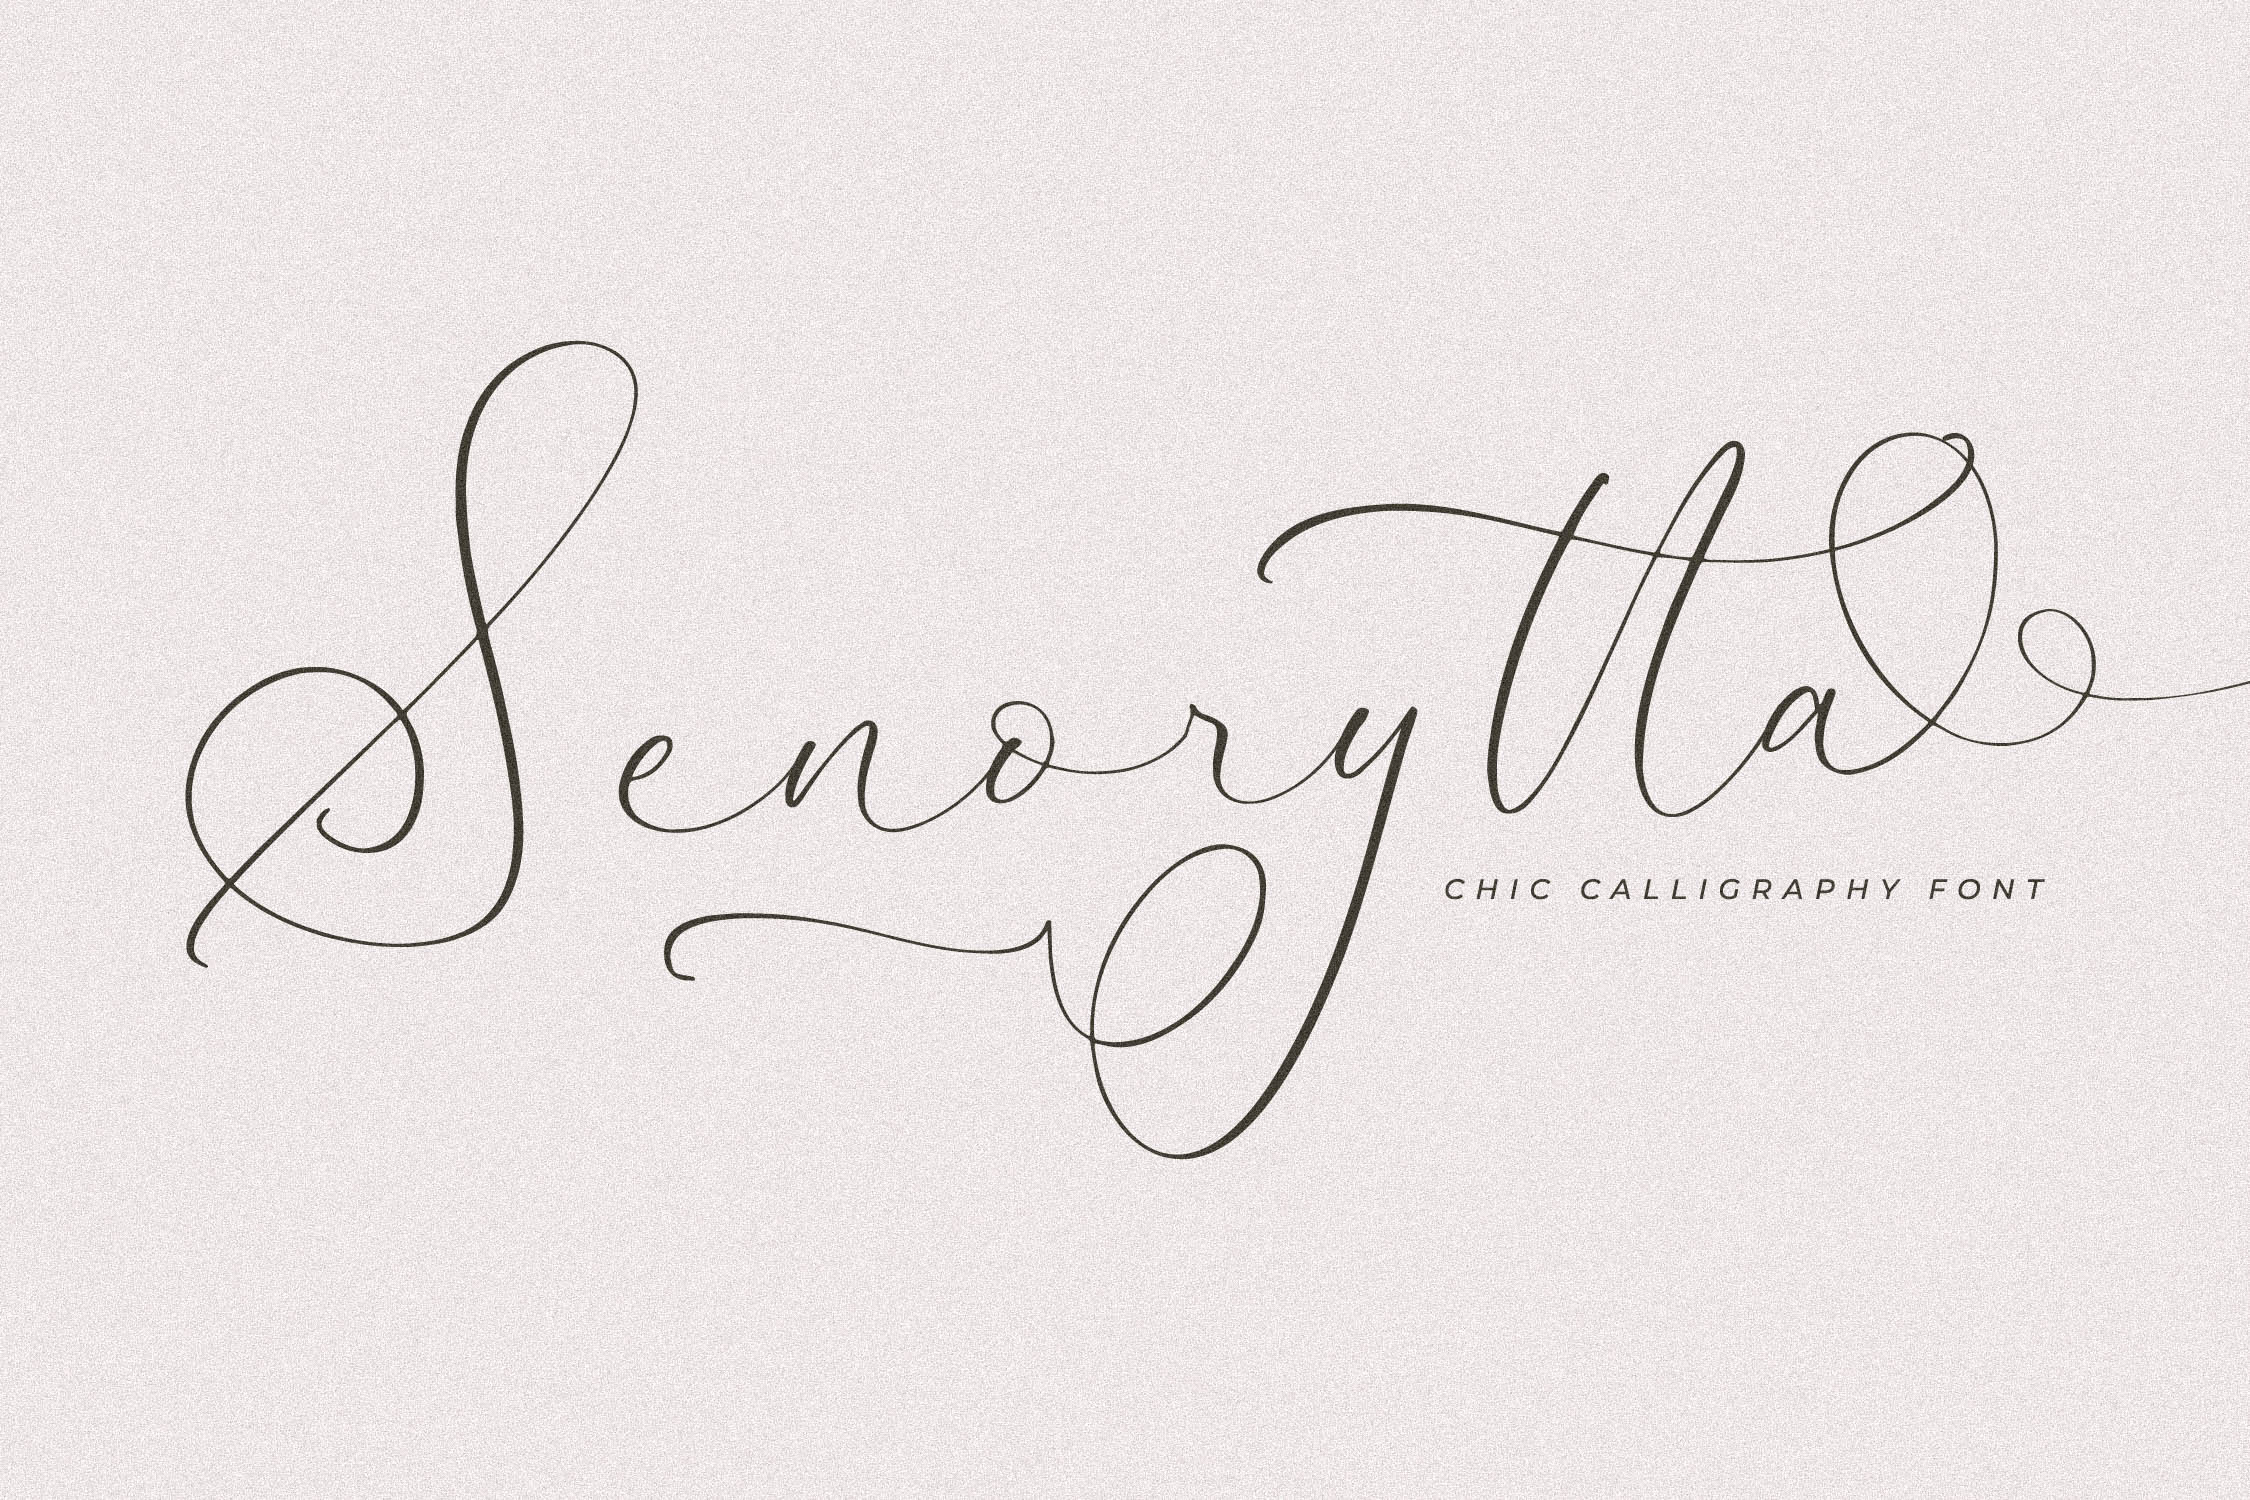 Senorytta Chic Calligraphy Font